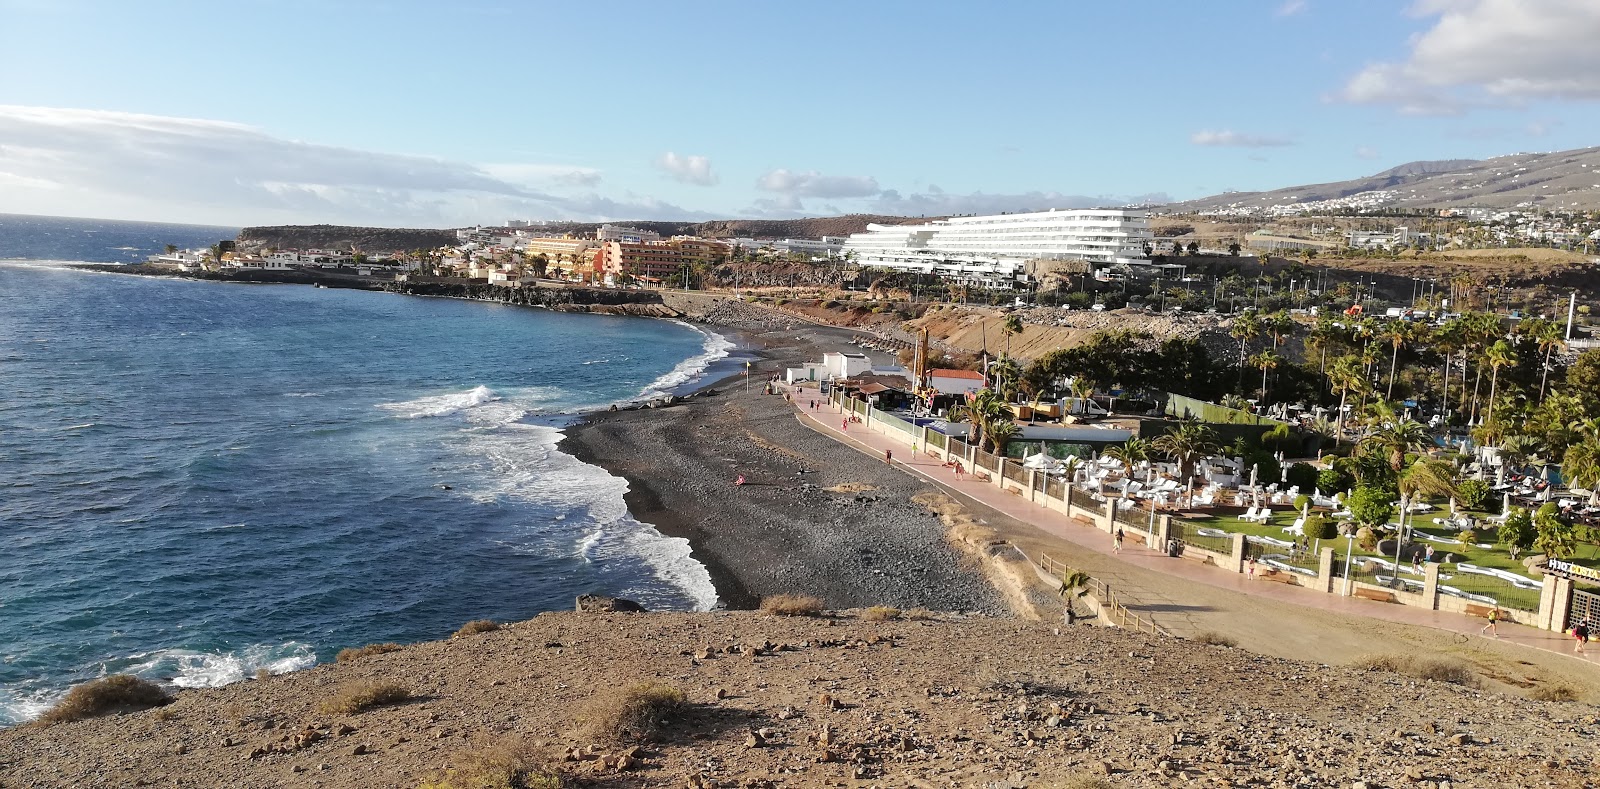 Foto de Playa del Veril com areia cinza e seixos superfície